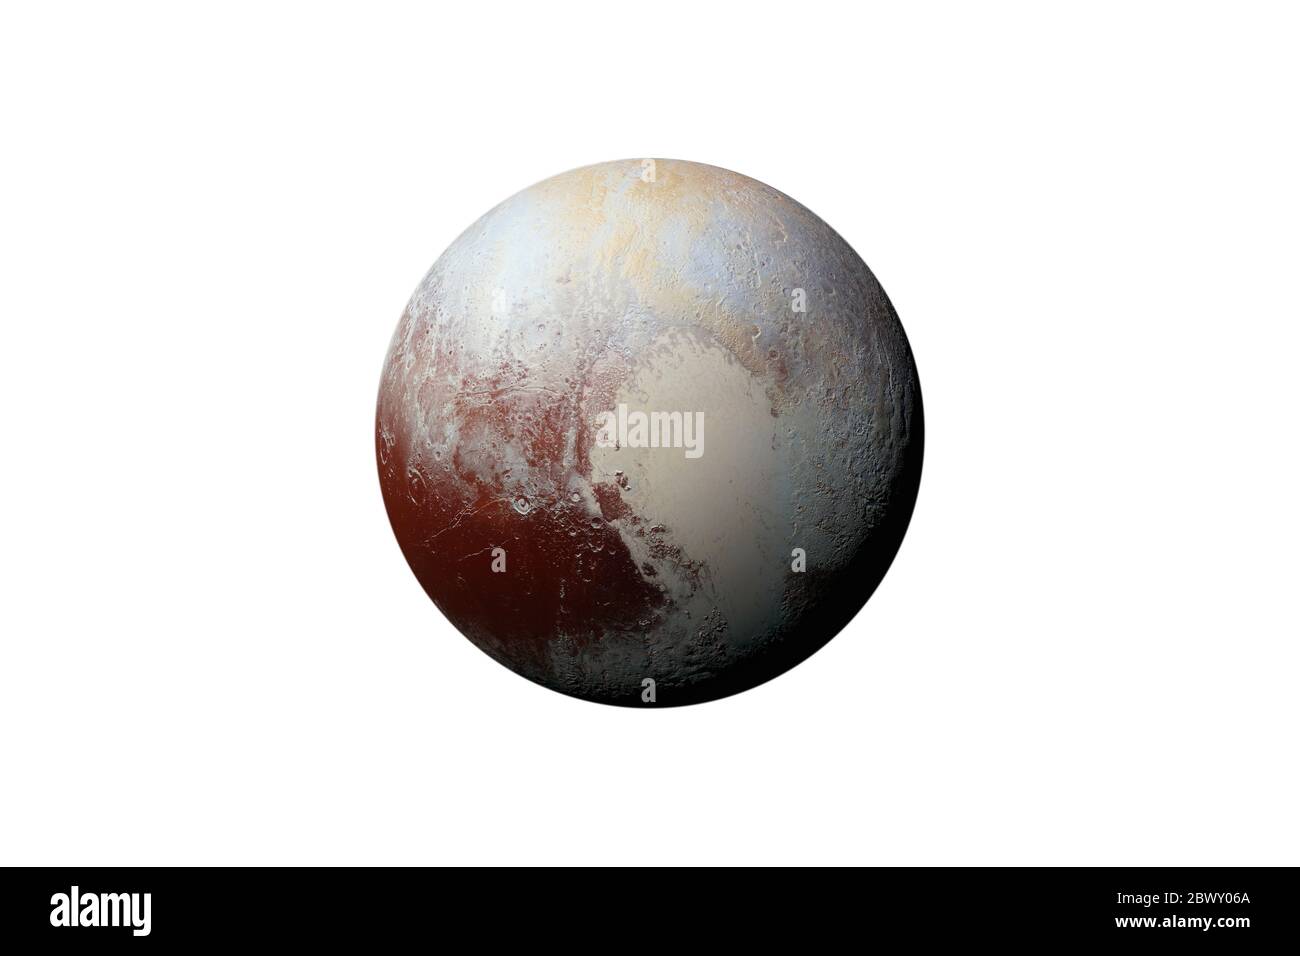 Planet Pluto im Sternenhimmel des Sonnensystems im All. Dieses Bildelement  wurde von der NASA eingerichtet Stockfotografie - Alamy